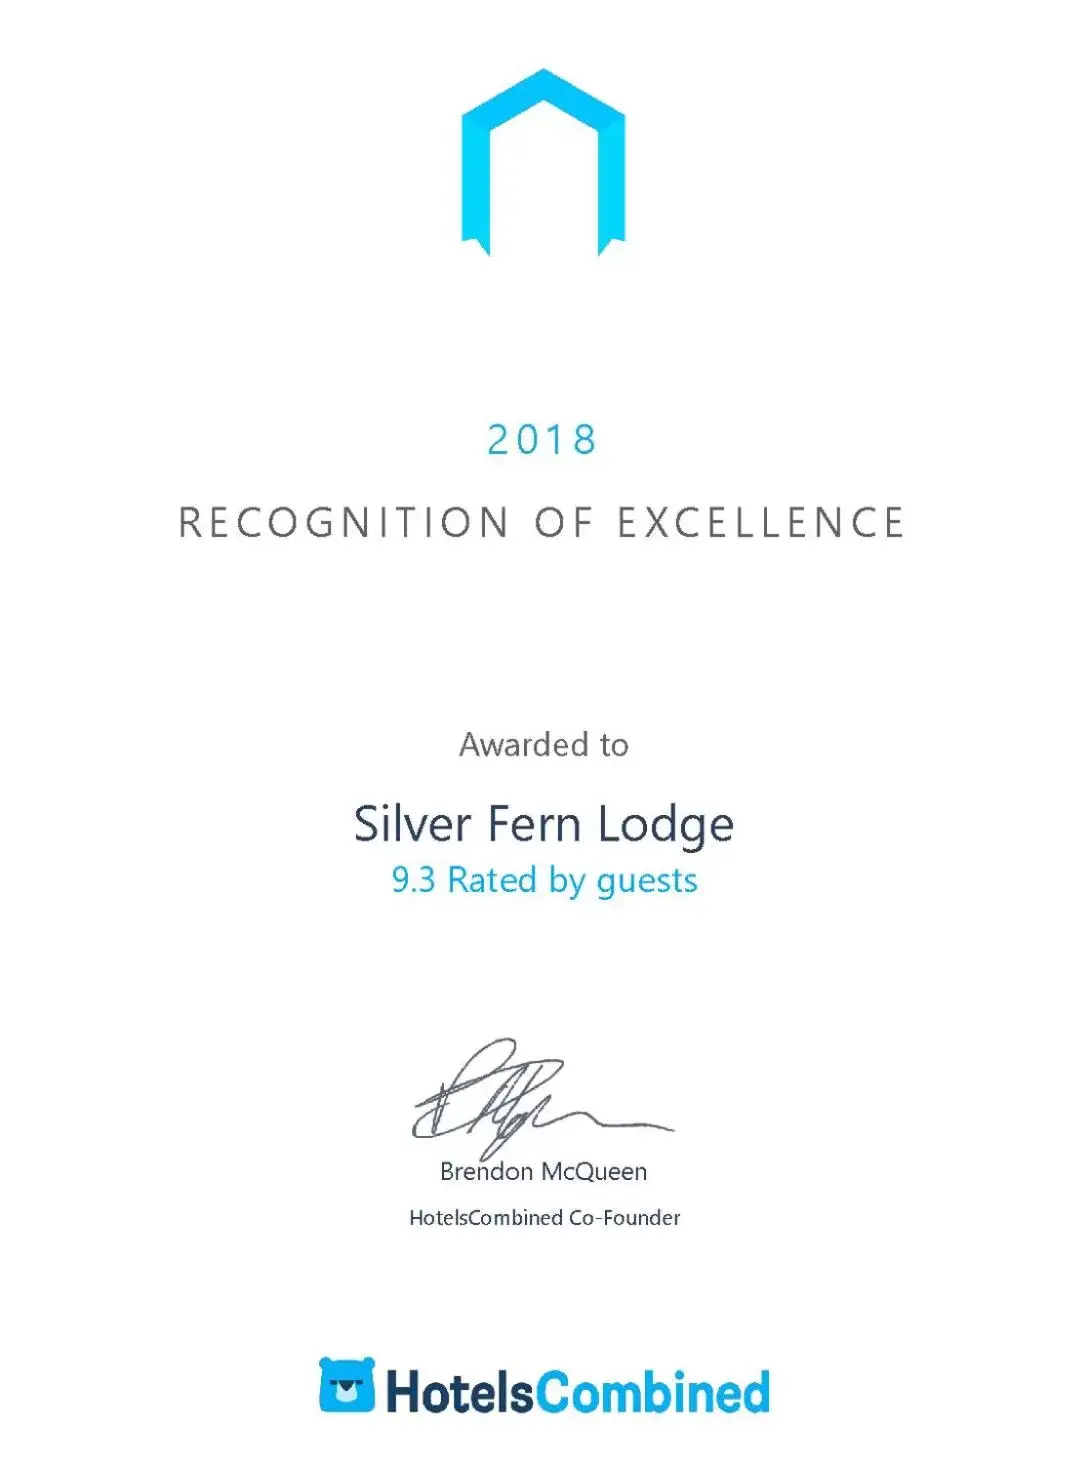 Certificate/Award in Silver Fern Lodge